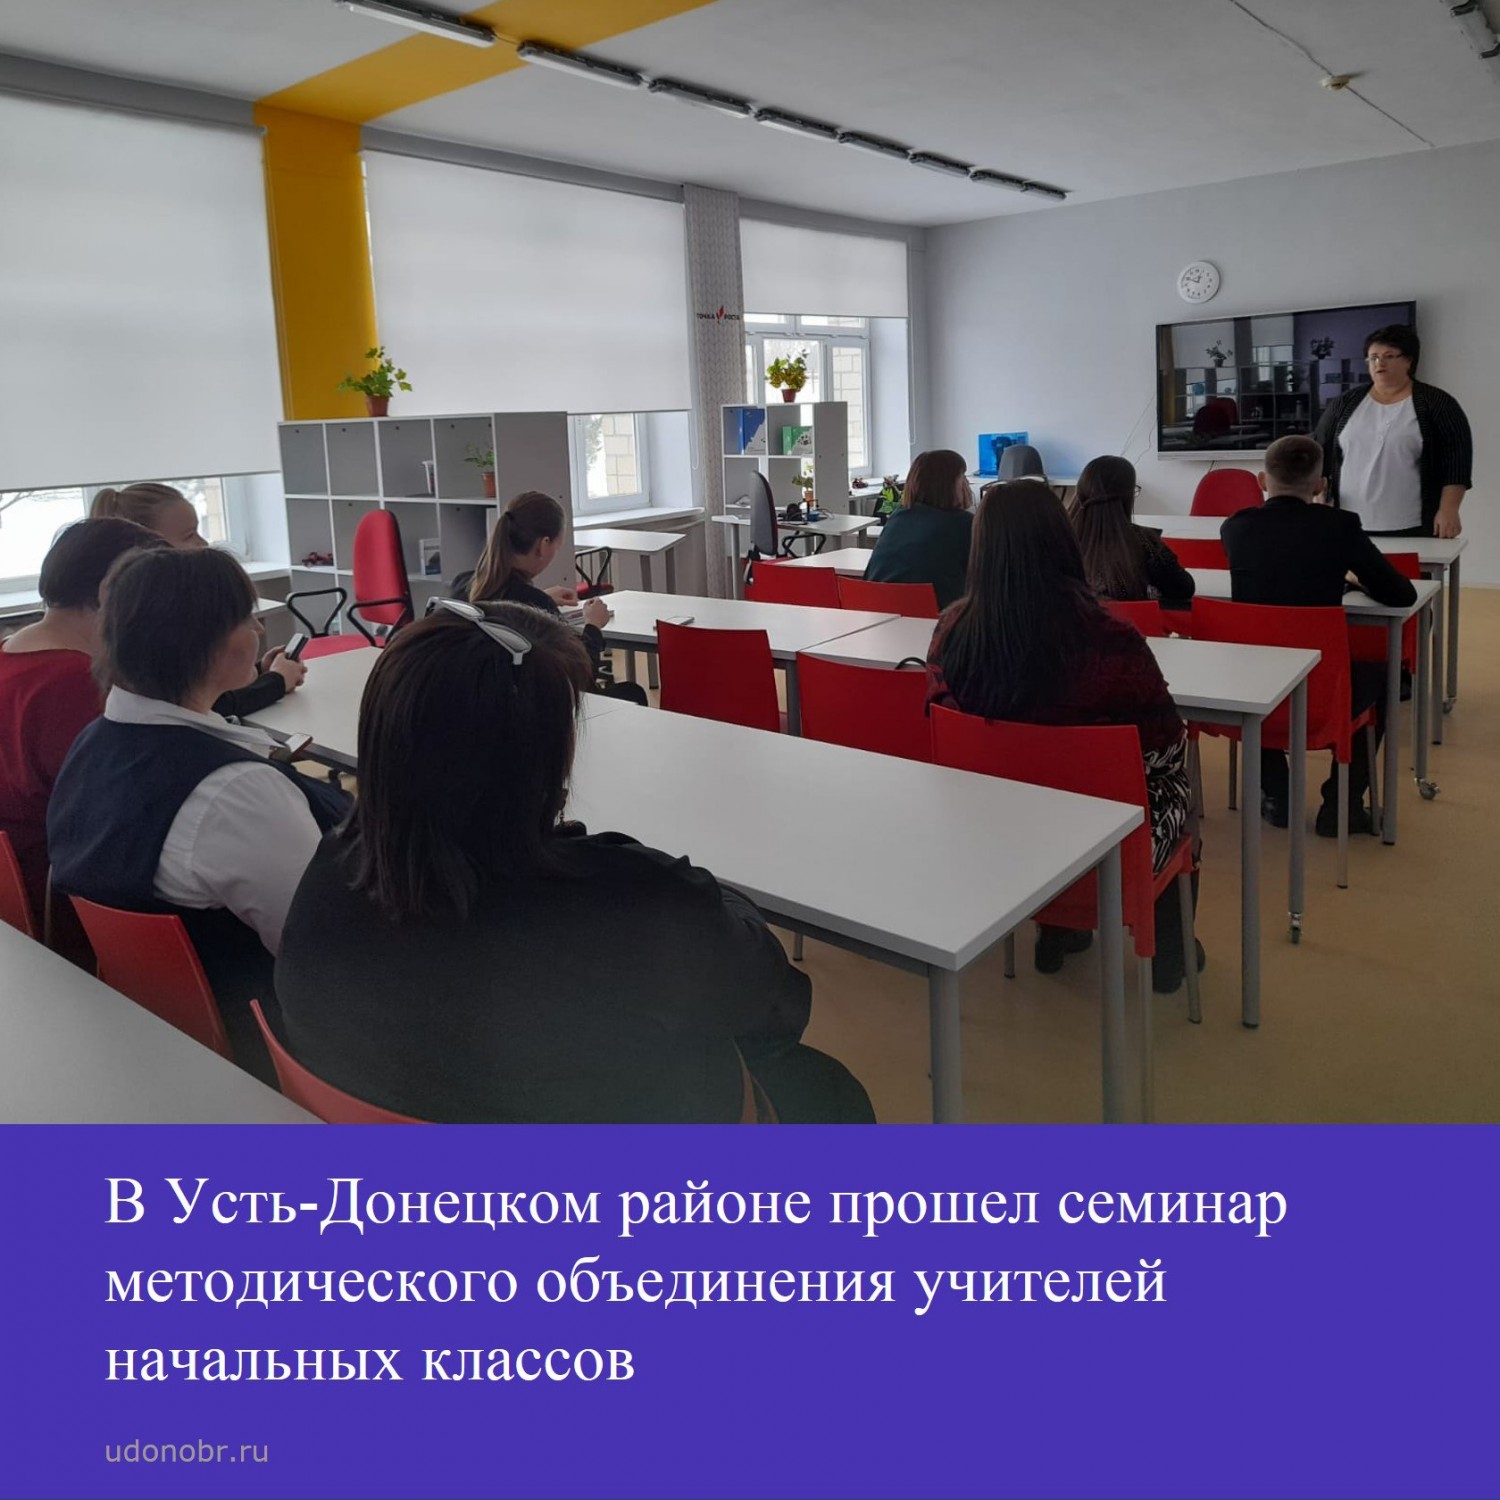 В Усть-Донецком районе прошел семинар методического объединения учителей начальных классов